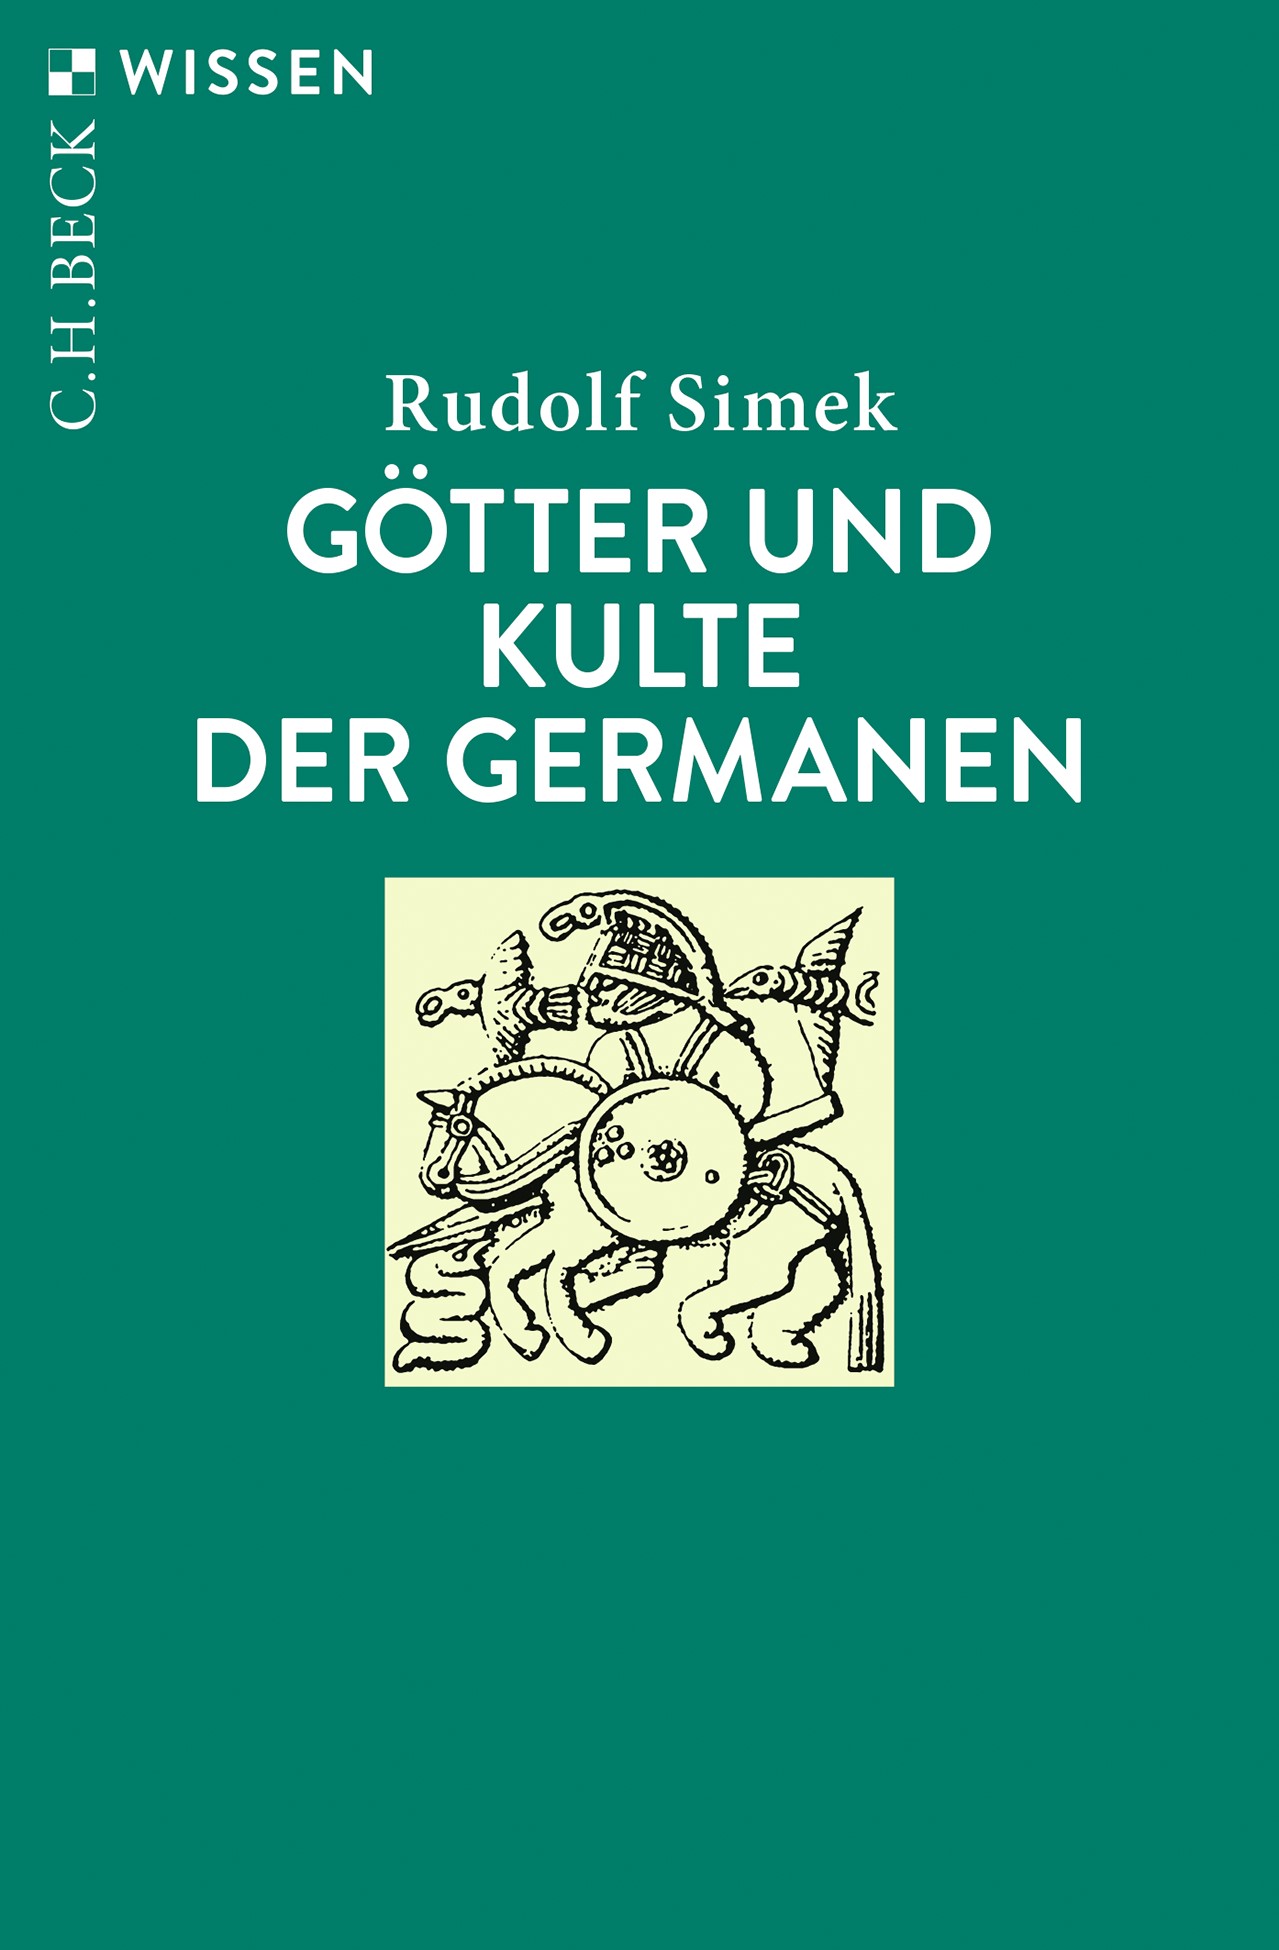 Cover: Simek, Rudolf, Götter und Kulte der Germanen